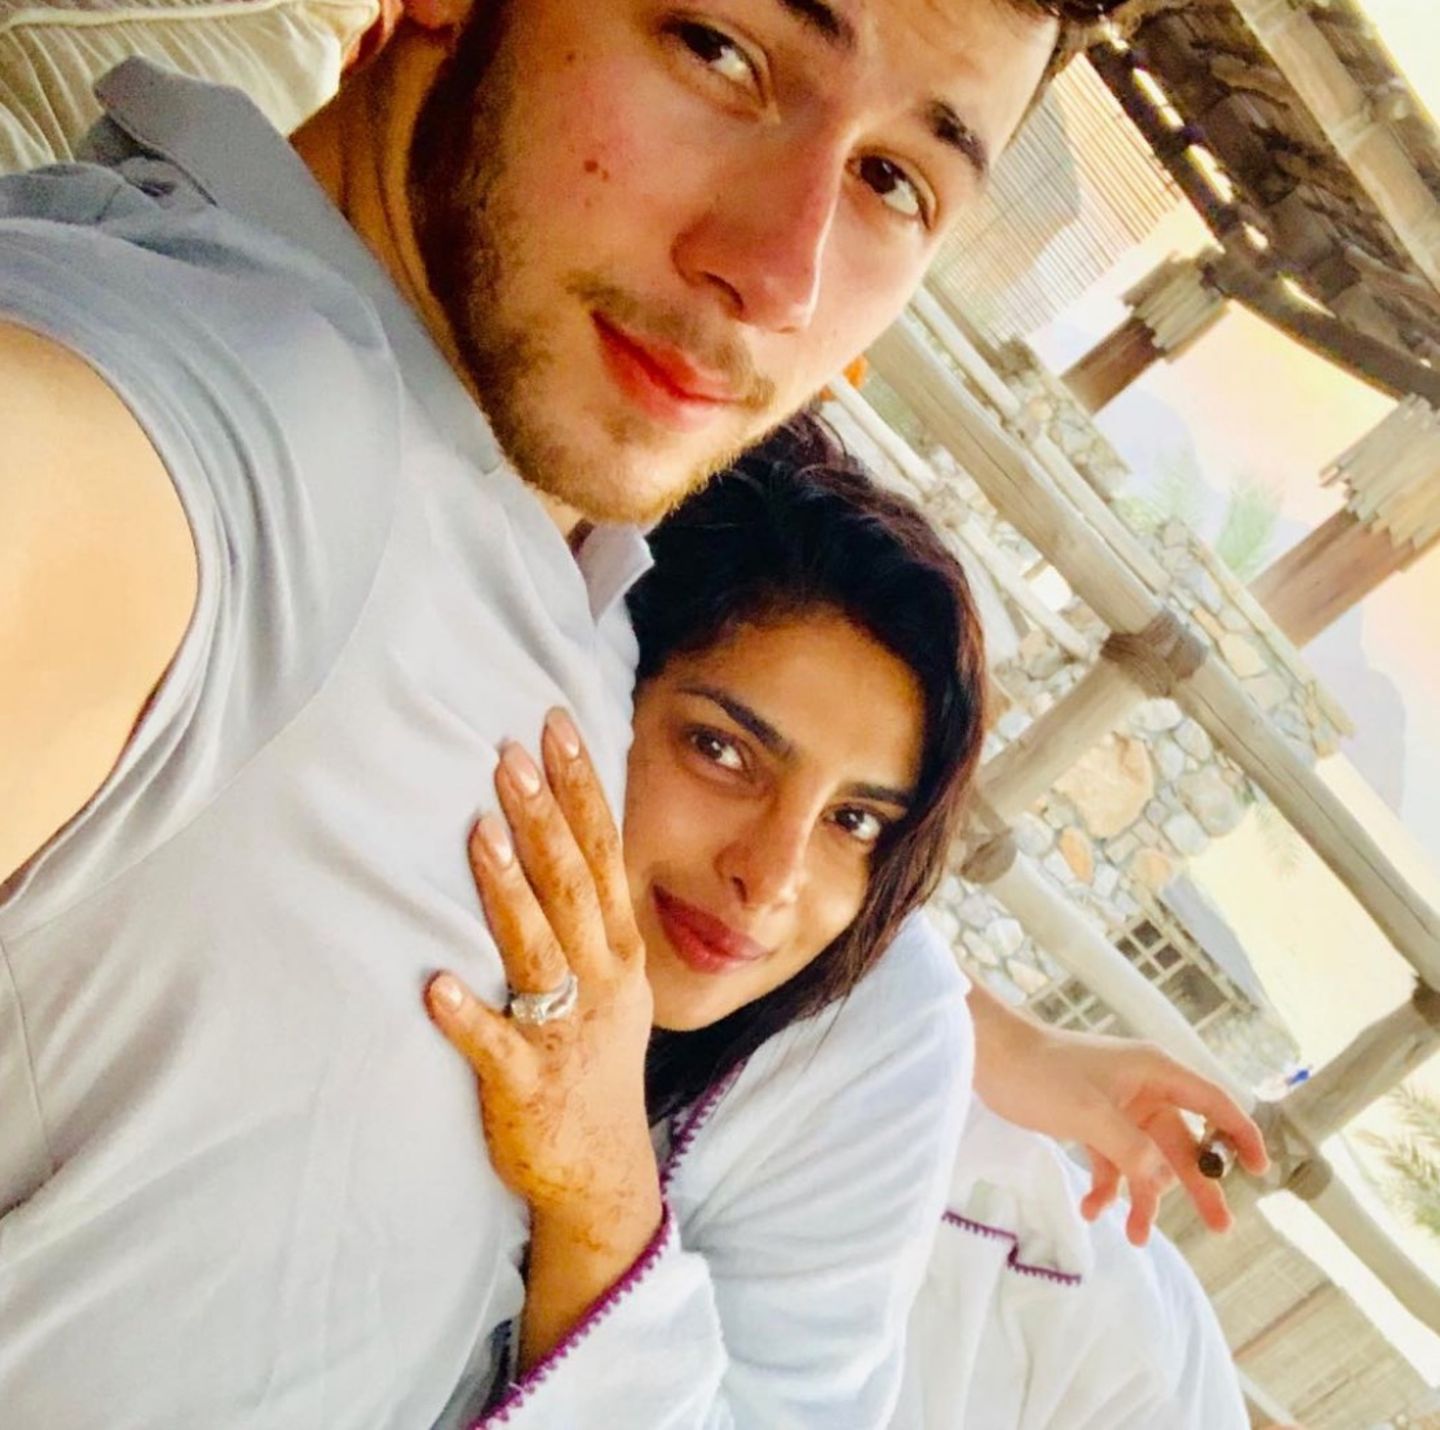 11. Dezember 2018  Derweil erholen sich Nick Jonas und seine frischangetraute Ehefrau Priyanka Chopra noch von den Nachwehen ihrer wilden Hochzeit. Etwas erschöpft, aber unglaublich glücklich, schaut das Paar in die Kamera. Ihren Ring setzt Chopra dabei gekonnt in Szene. 